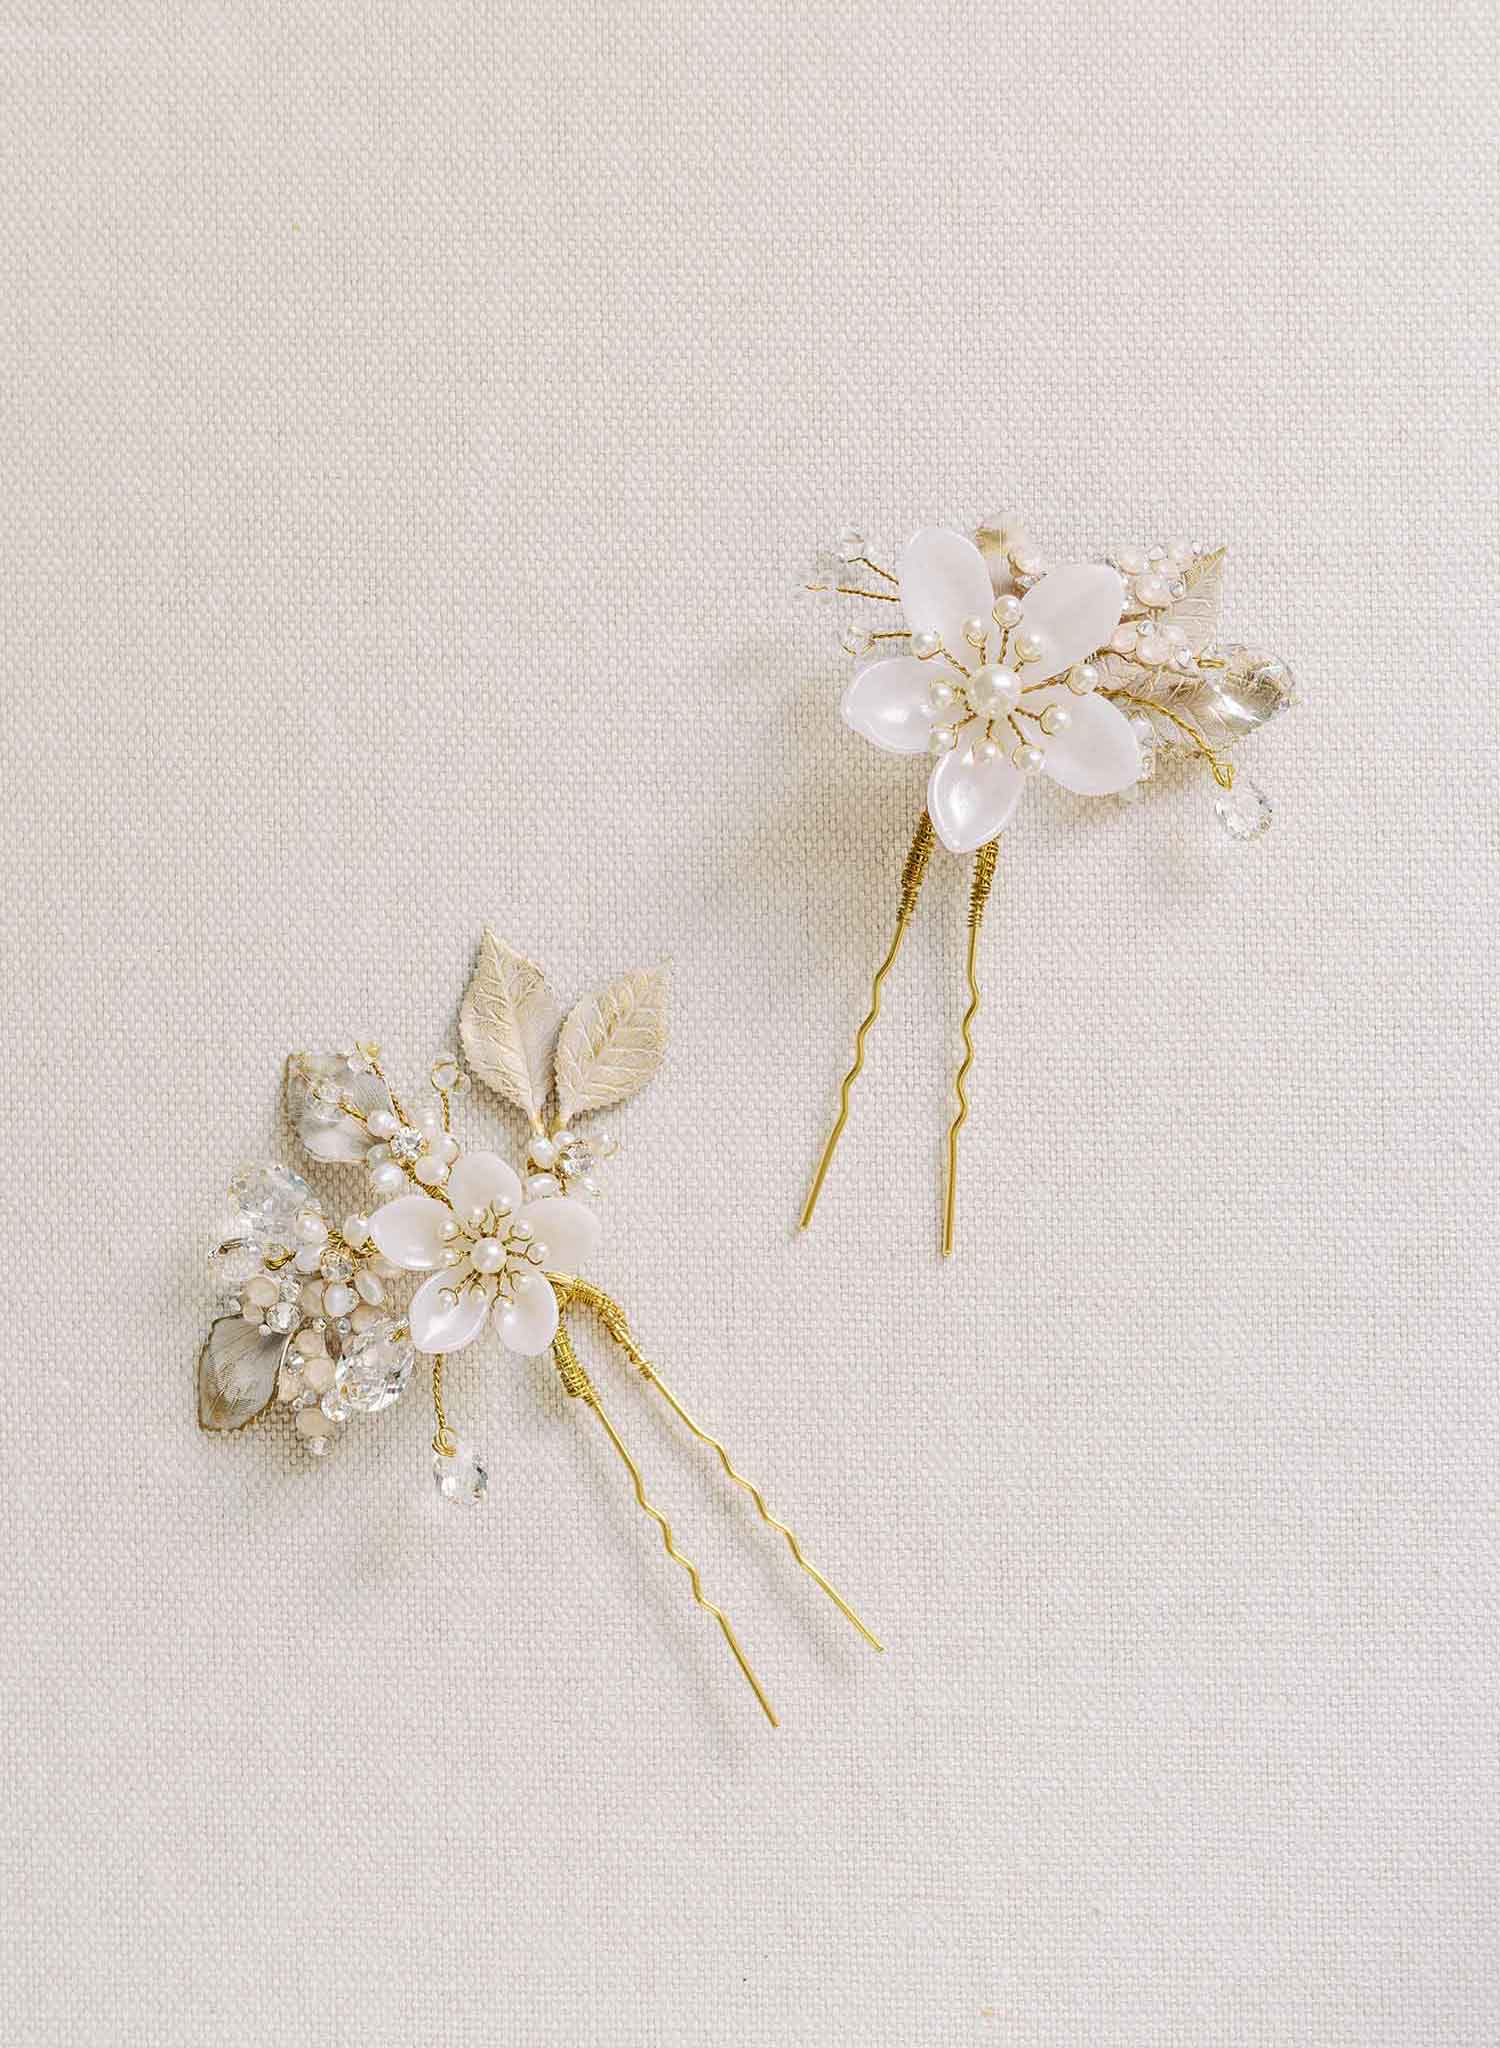 Bridal Flowers Hair Pins - Nina Floral Pins #hair #brooch #casual JONIDA  RIPANI Bridal floral ha…